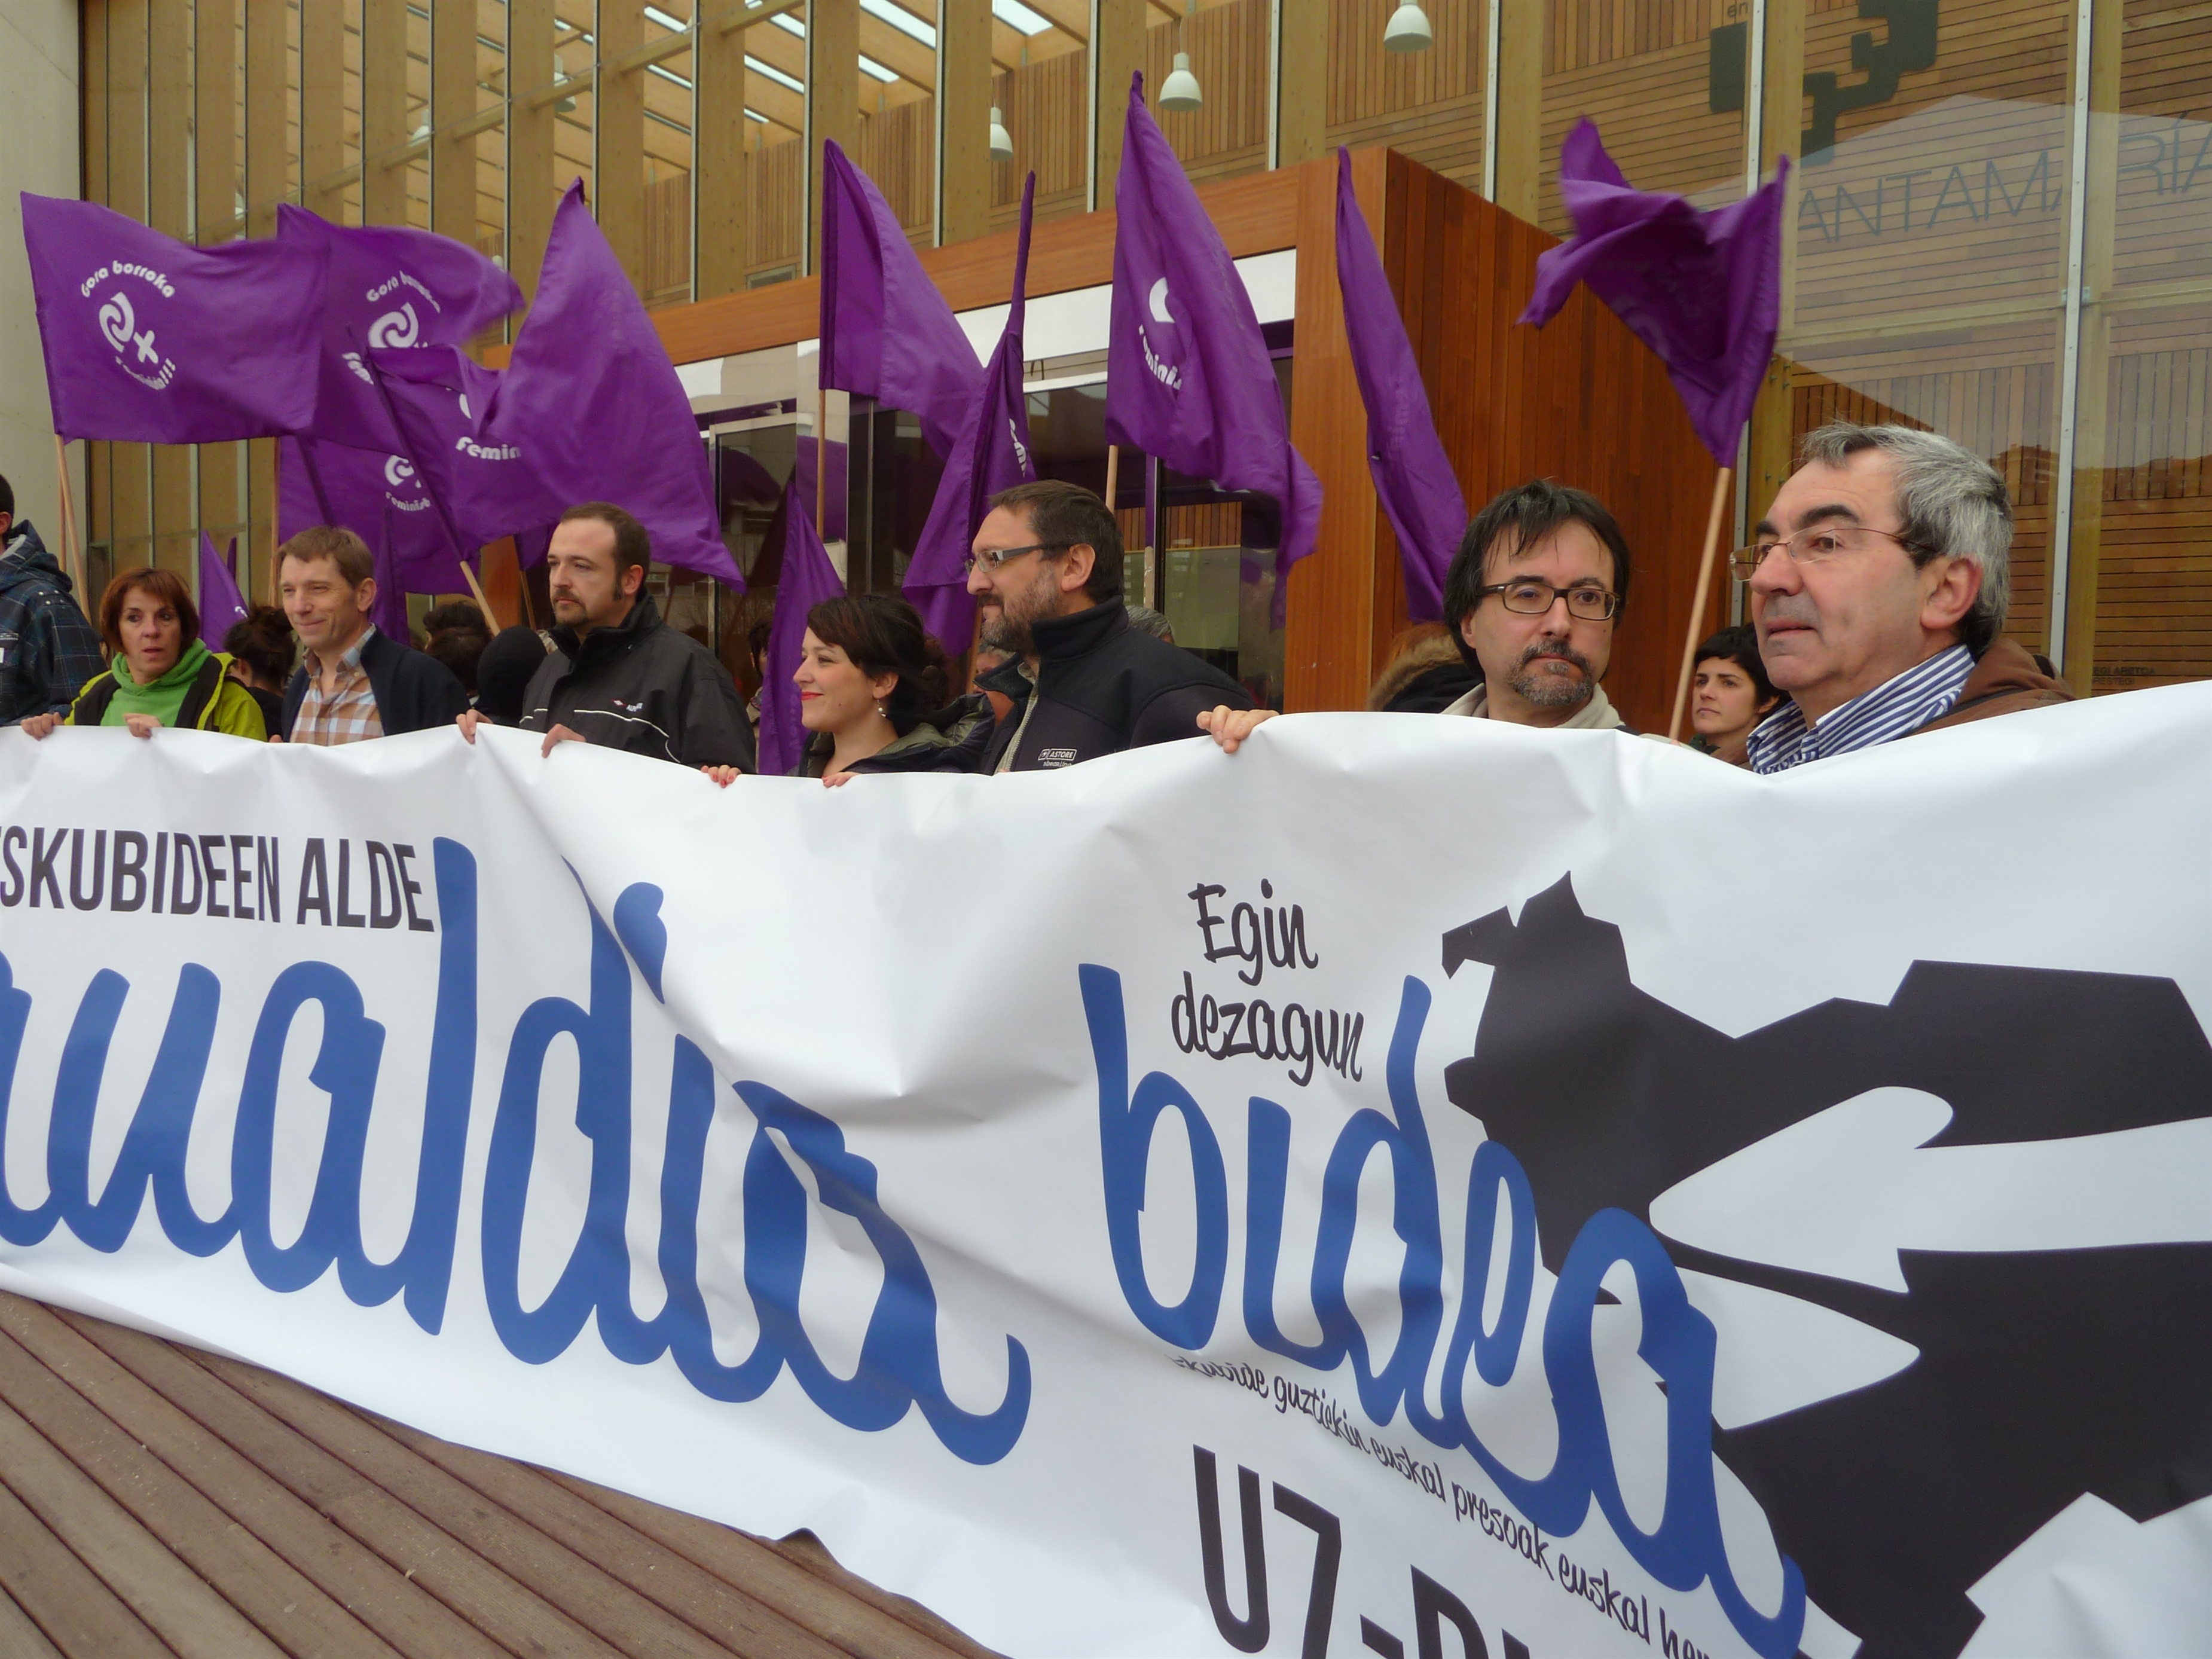 Diputación de Guipúzcoa urge al Estado a «dar pasos» para poner fin a la actual política penitenciaria